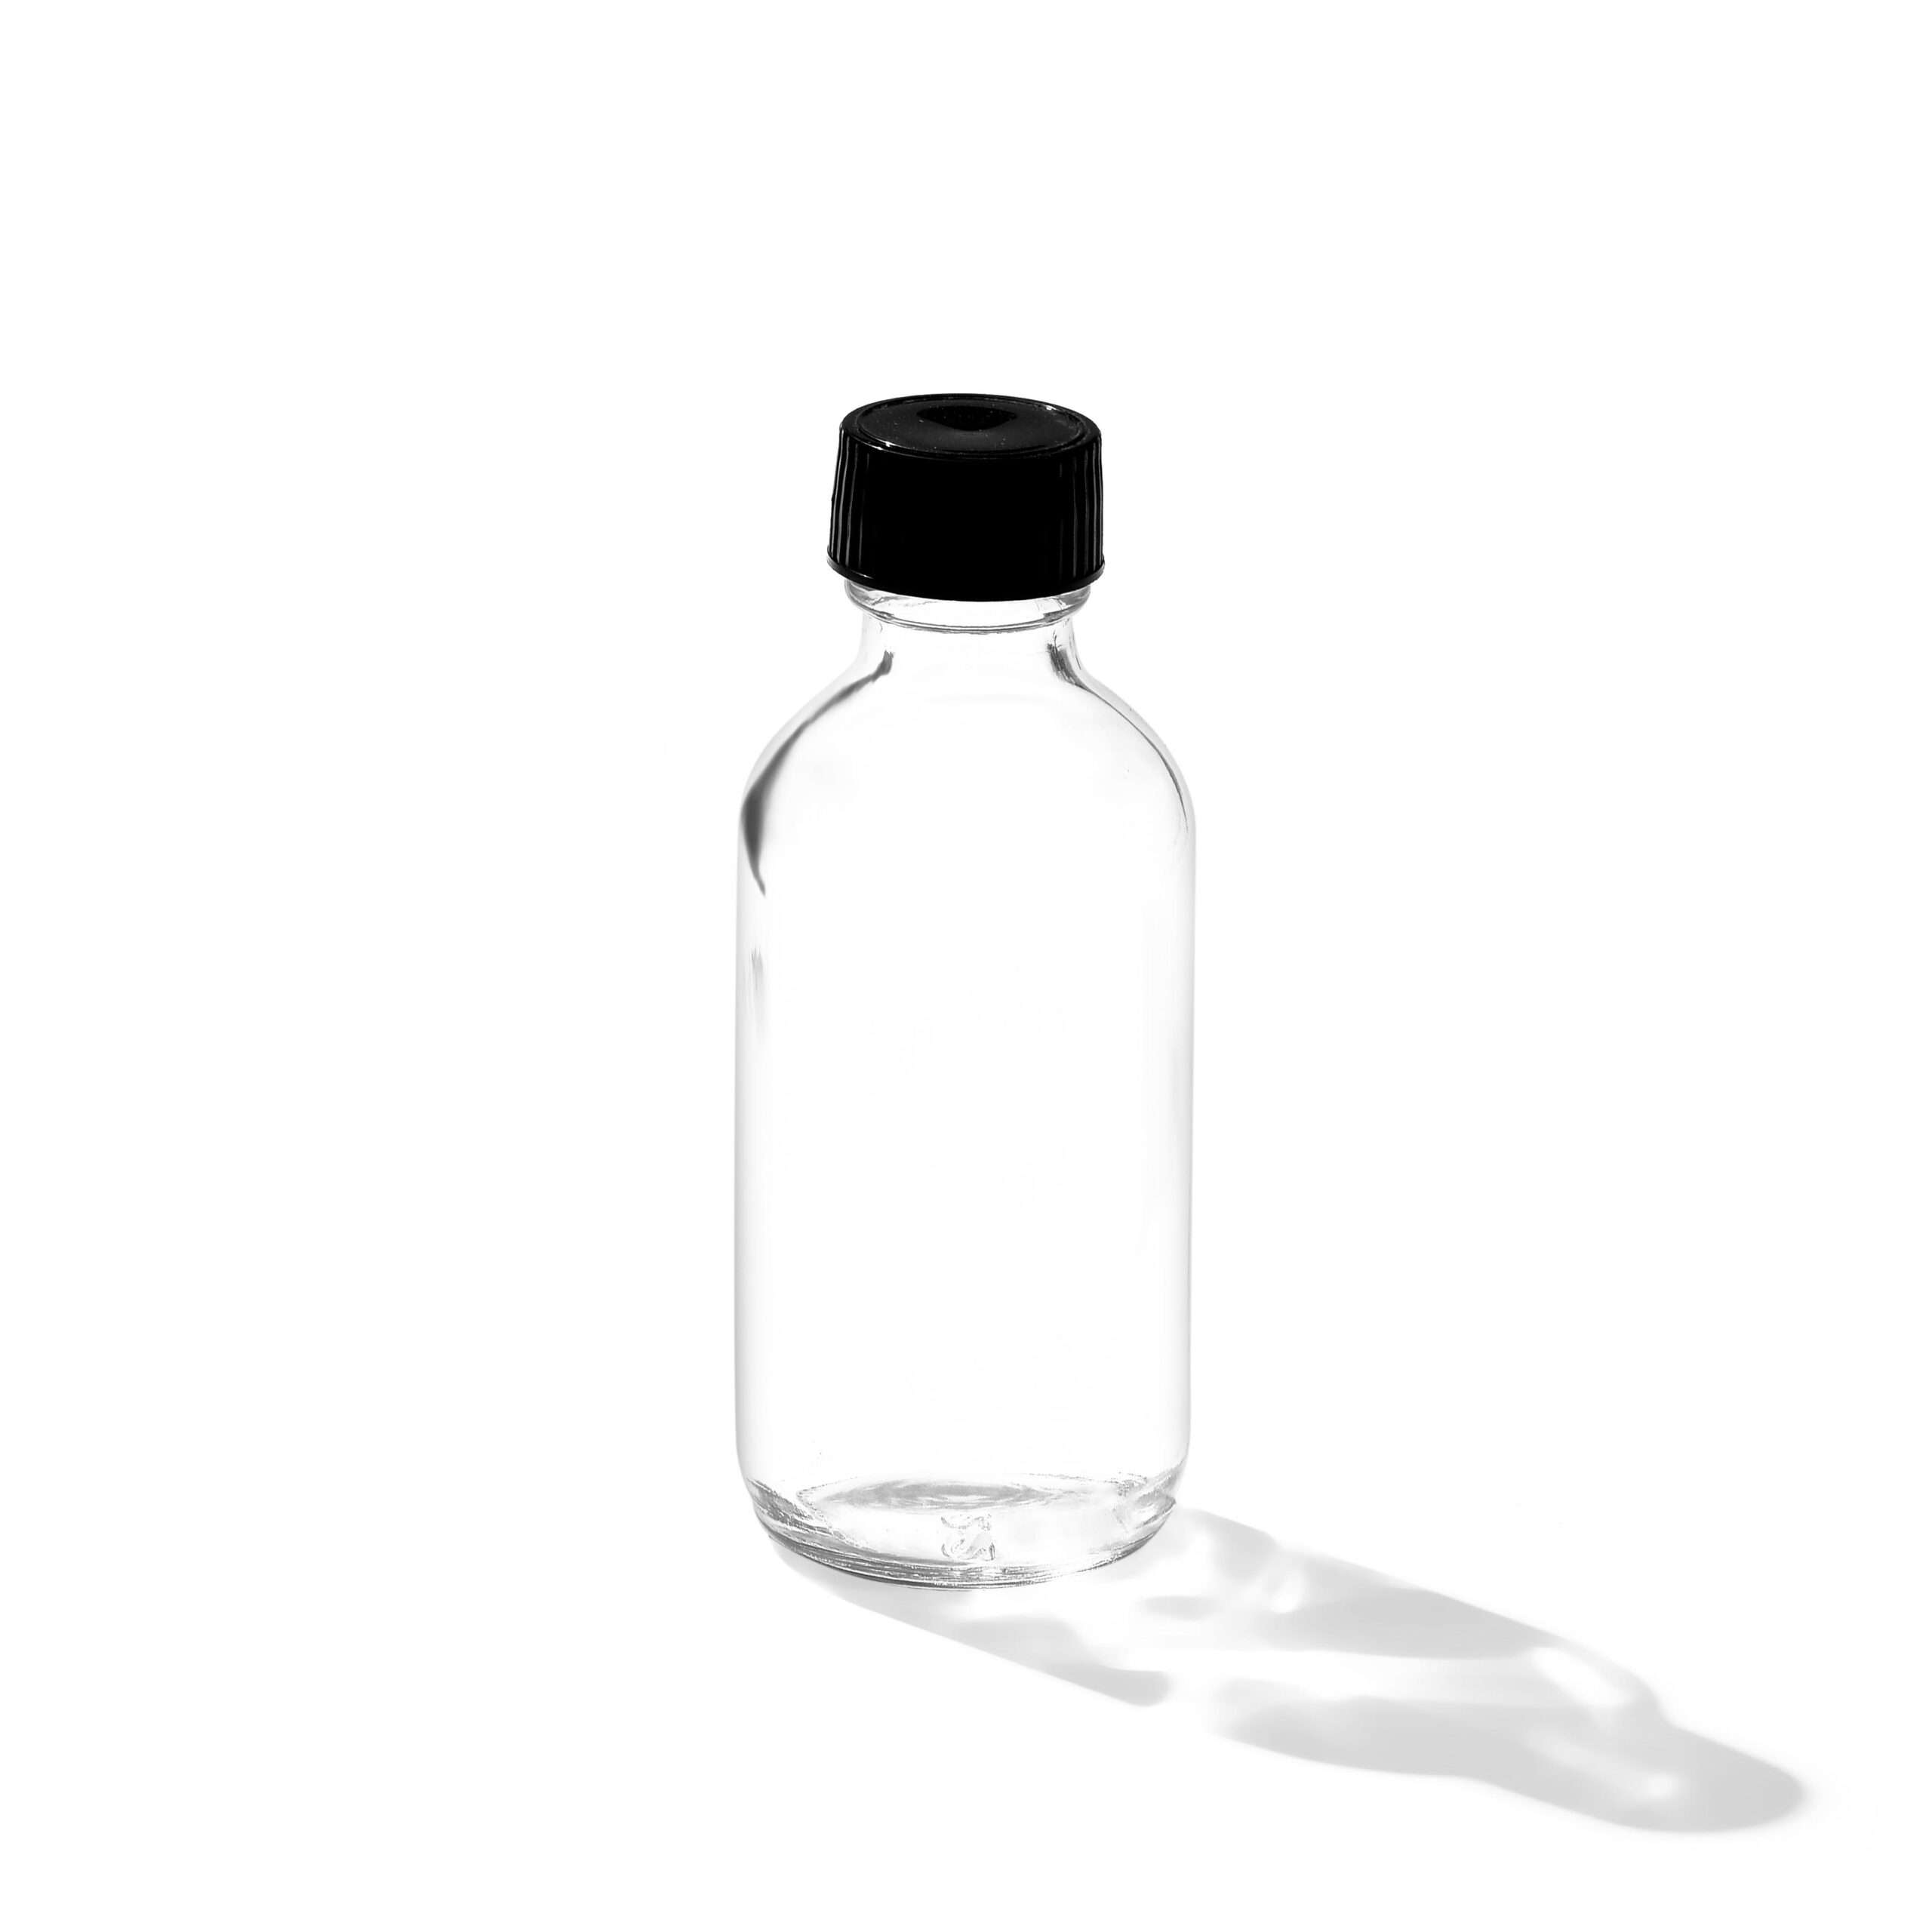 12x small bottles w funnel